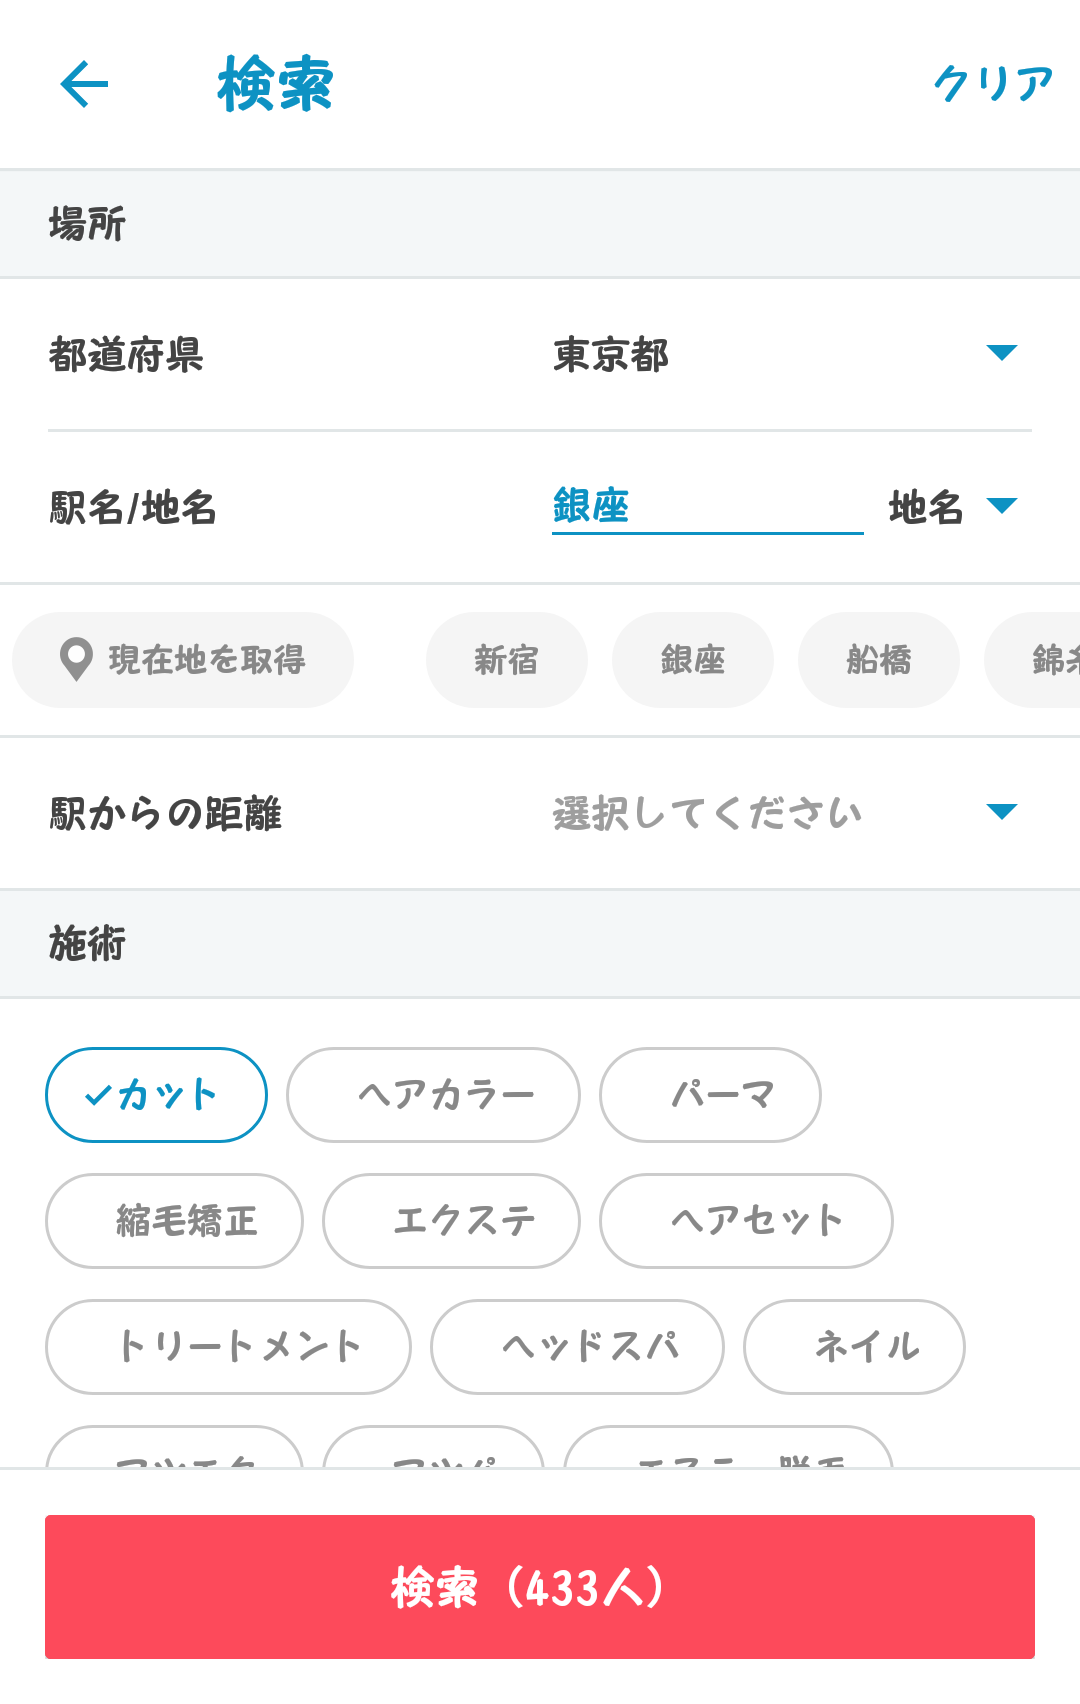 Minimo 爆安サロン予約アプリには訳がある カット0円 ネイル1500円も ぎゅってweb